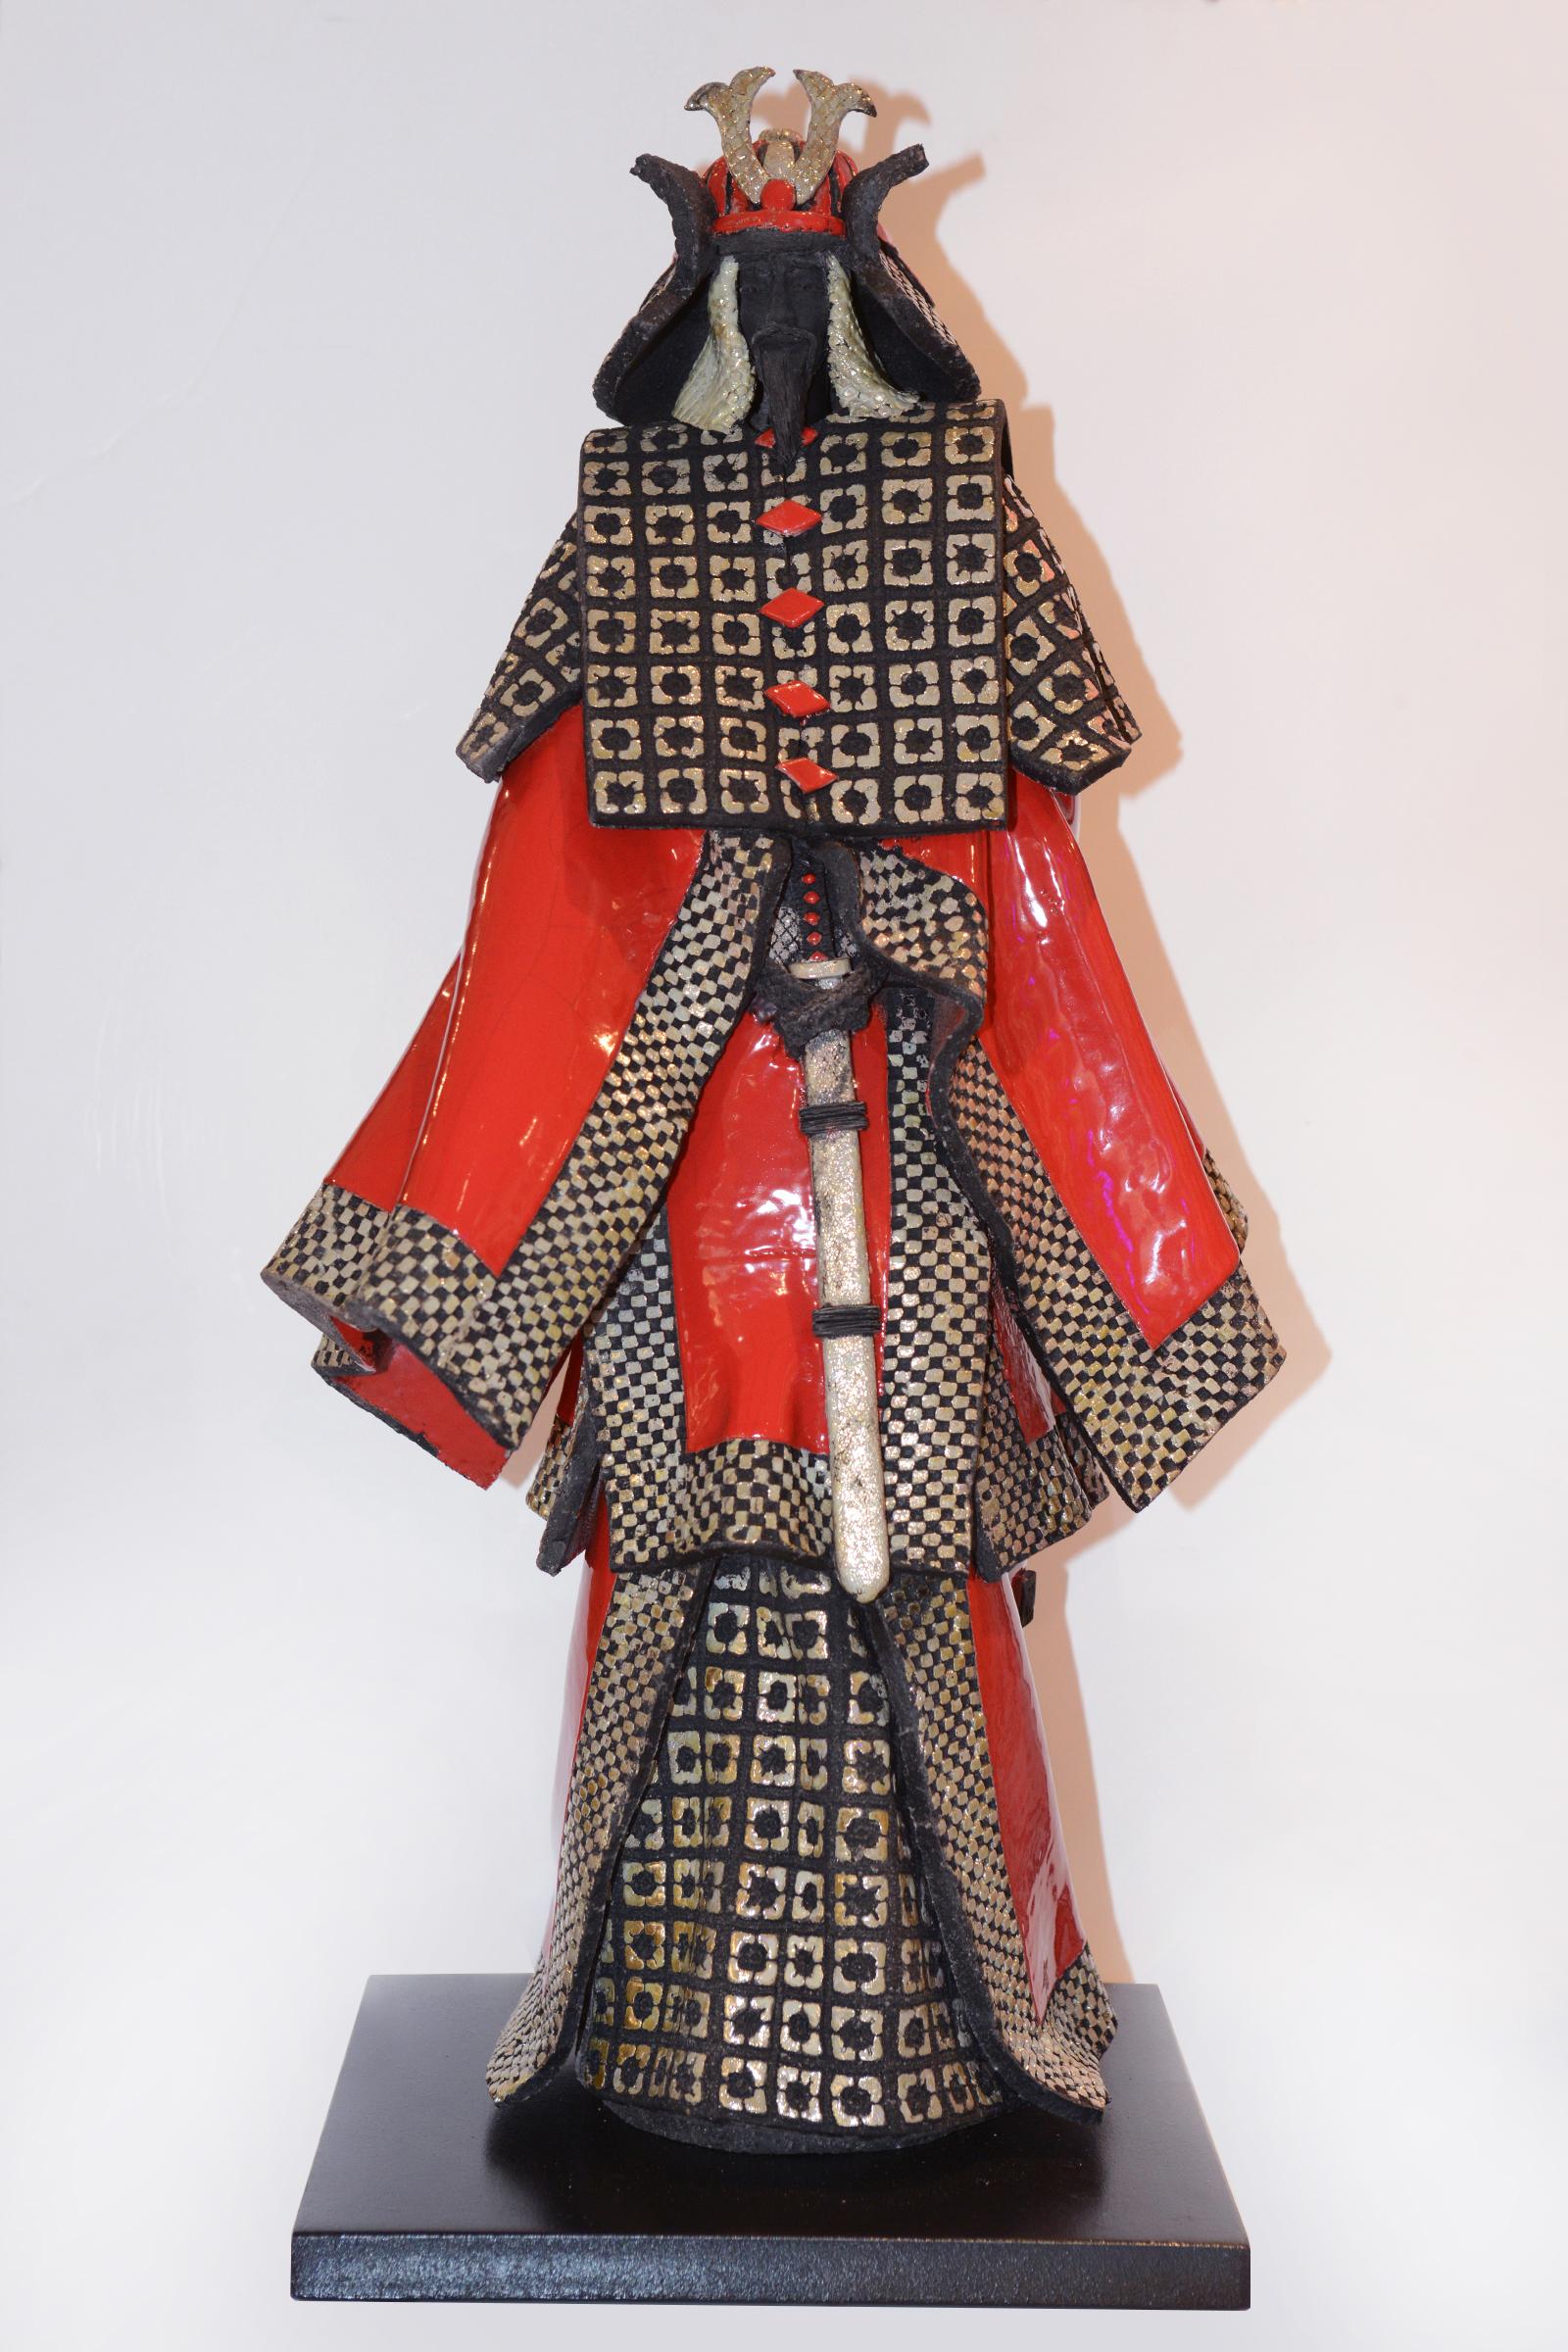 Sculpture Samurai Raku rouge et argent faite en
Céramique Raku qui a des reflets métalliques argentés. 
Les céramiques Raku Les samouraïs se distinguent par leur 
aspect brut. La technique de fumage révèle 
de très petites fissures dans l'émail